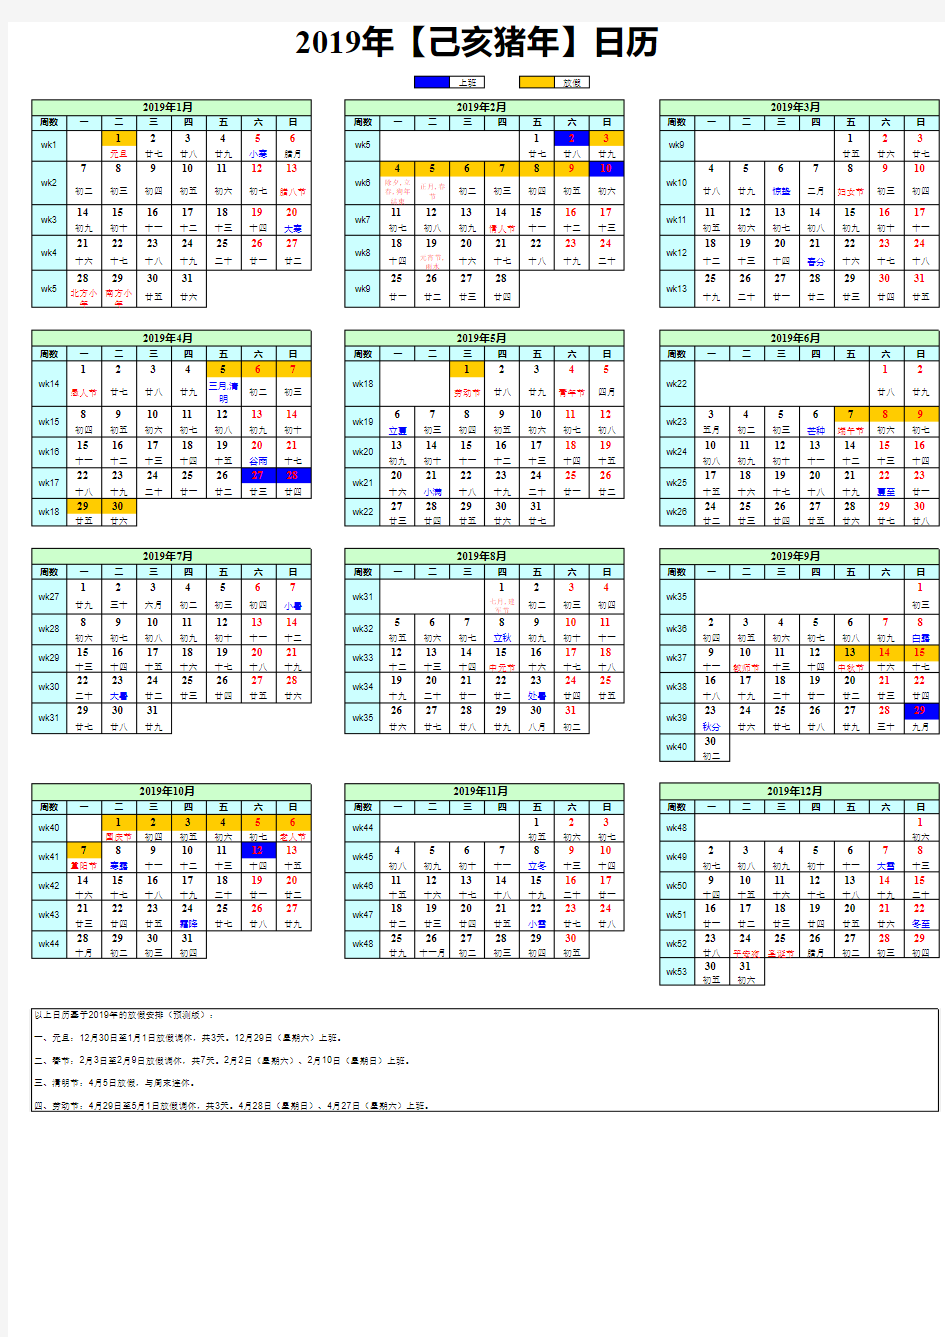 公元2019年-含节假日版日历-(带周数)